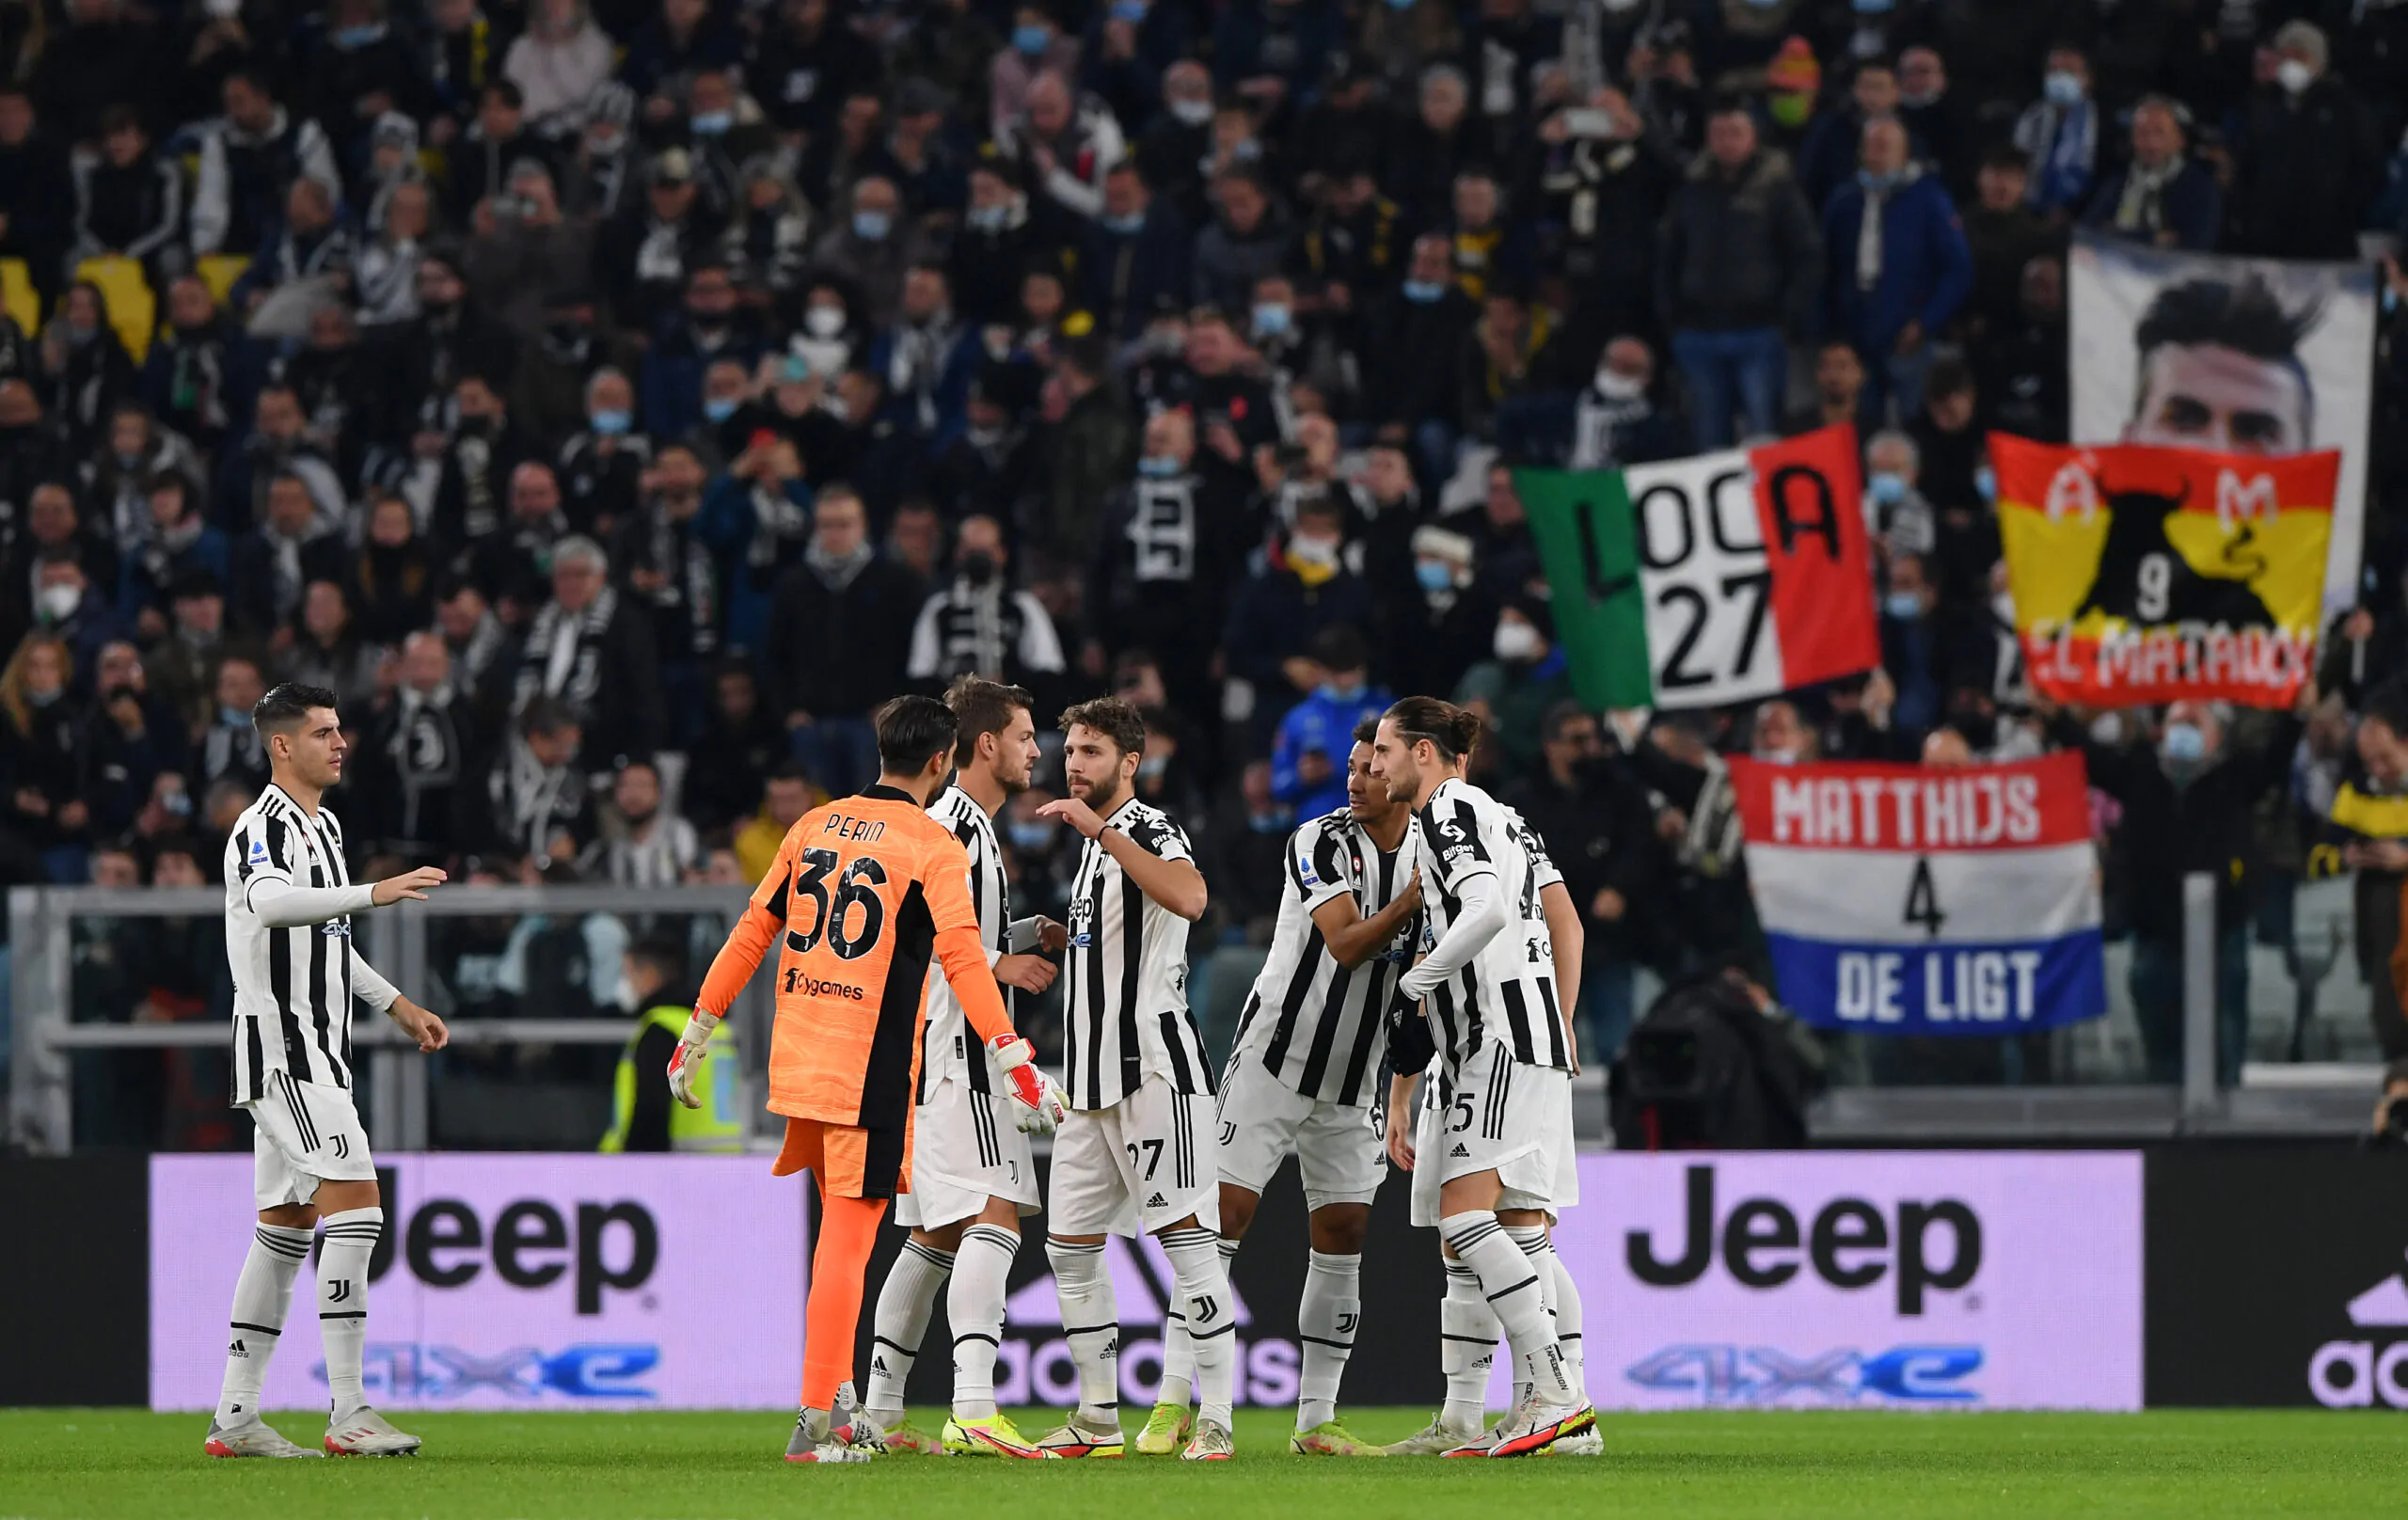 Il giornalista punge i bianconeri: “Alla Juventus sono tutti tuffatori”